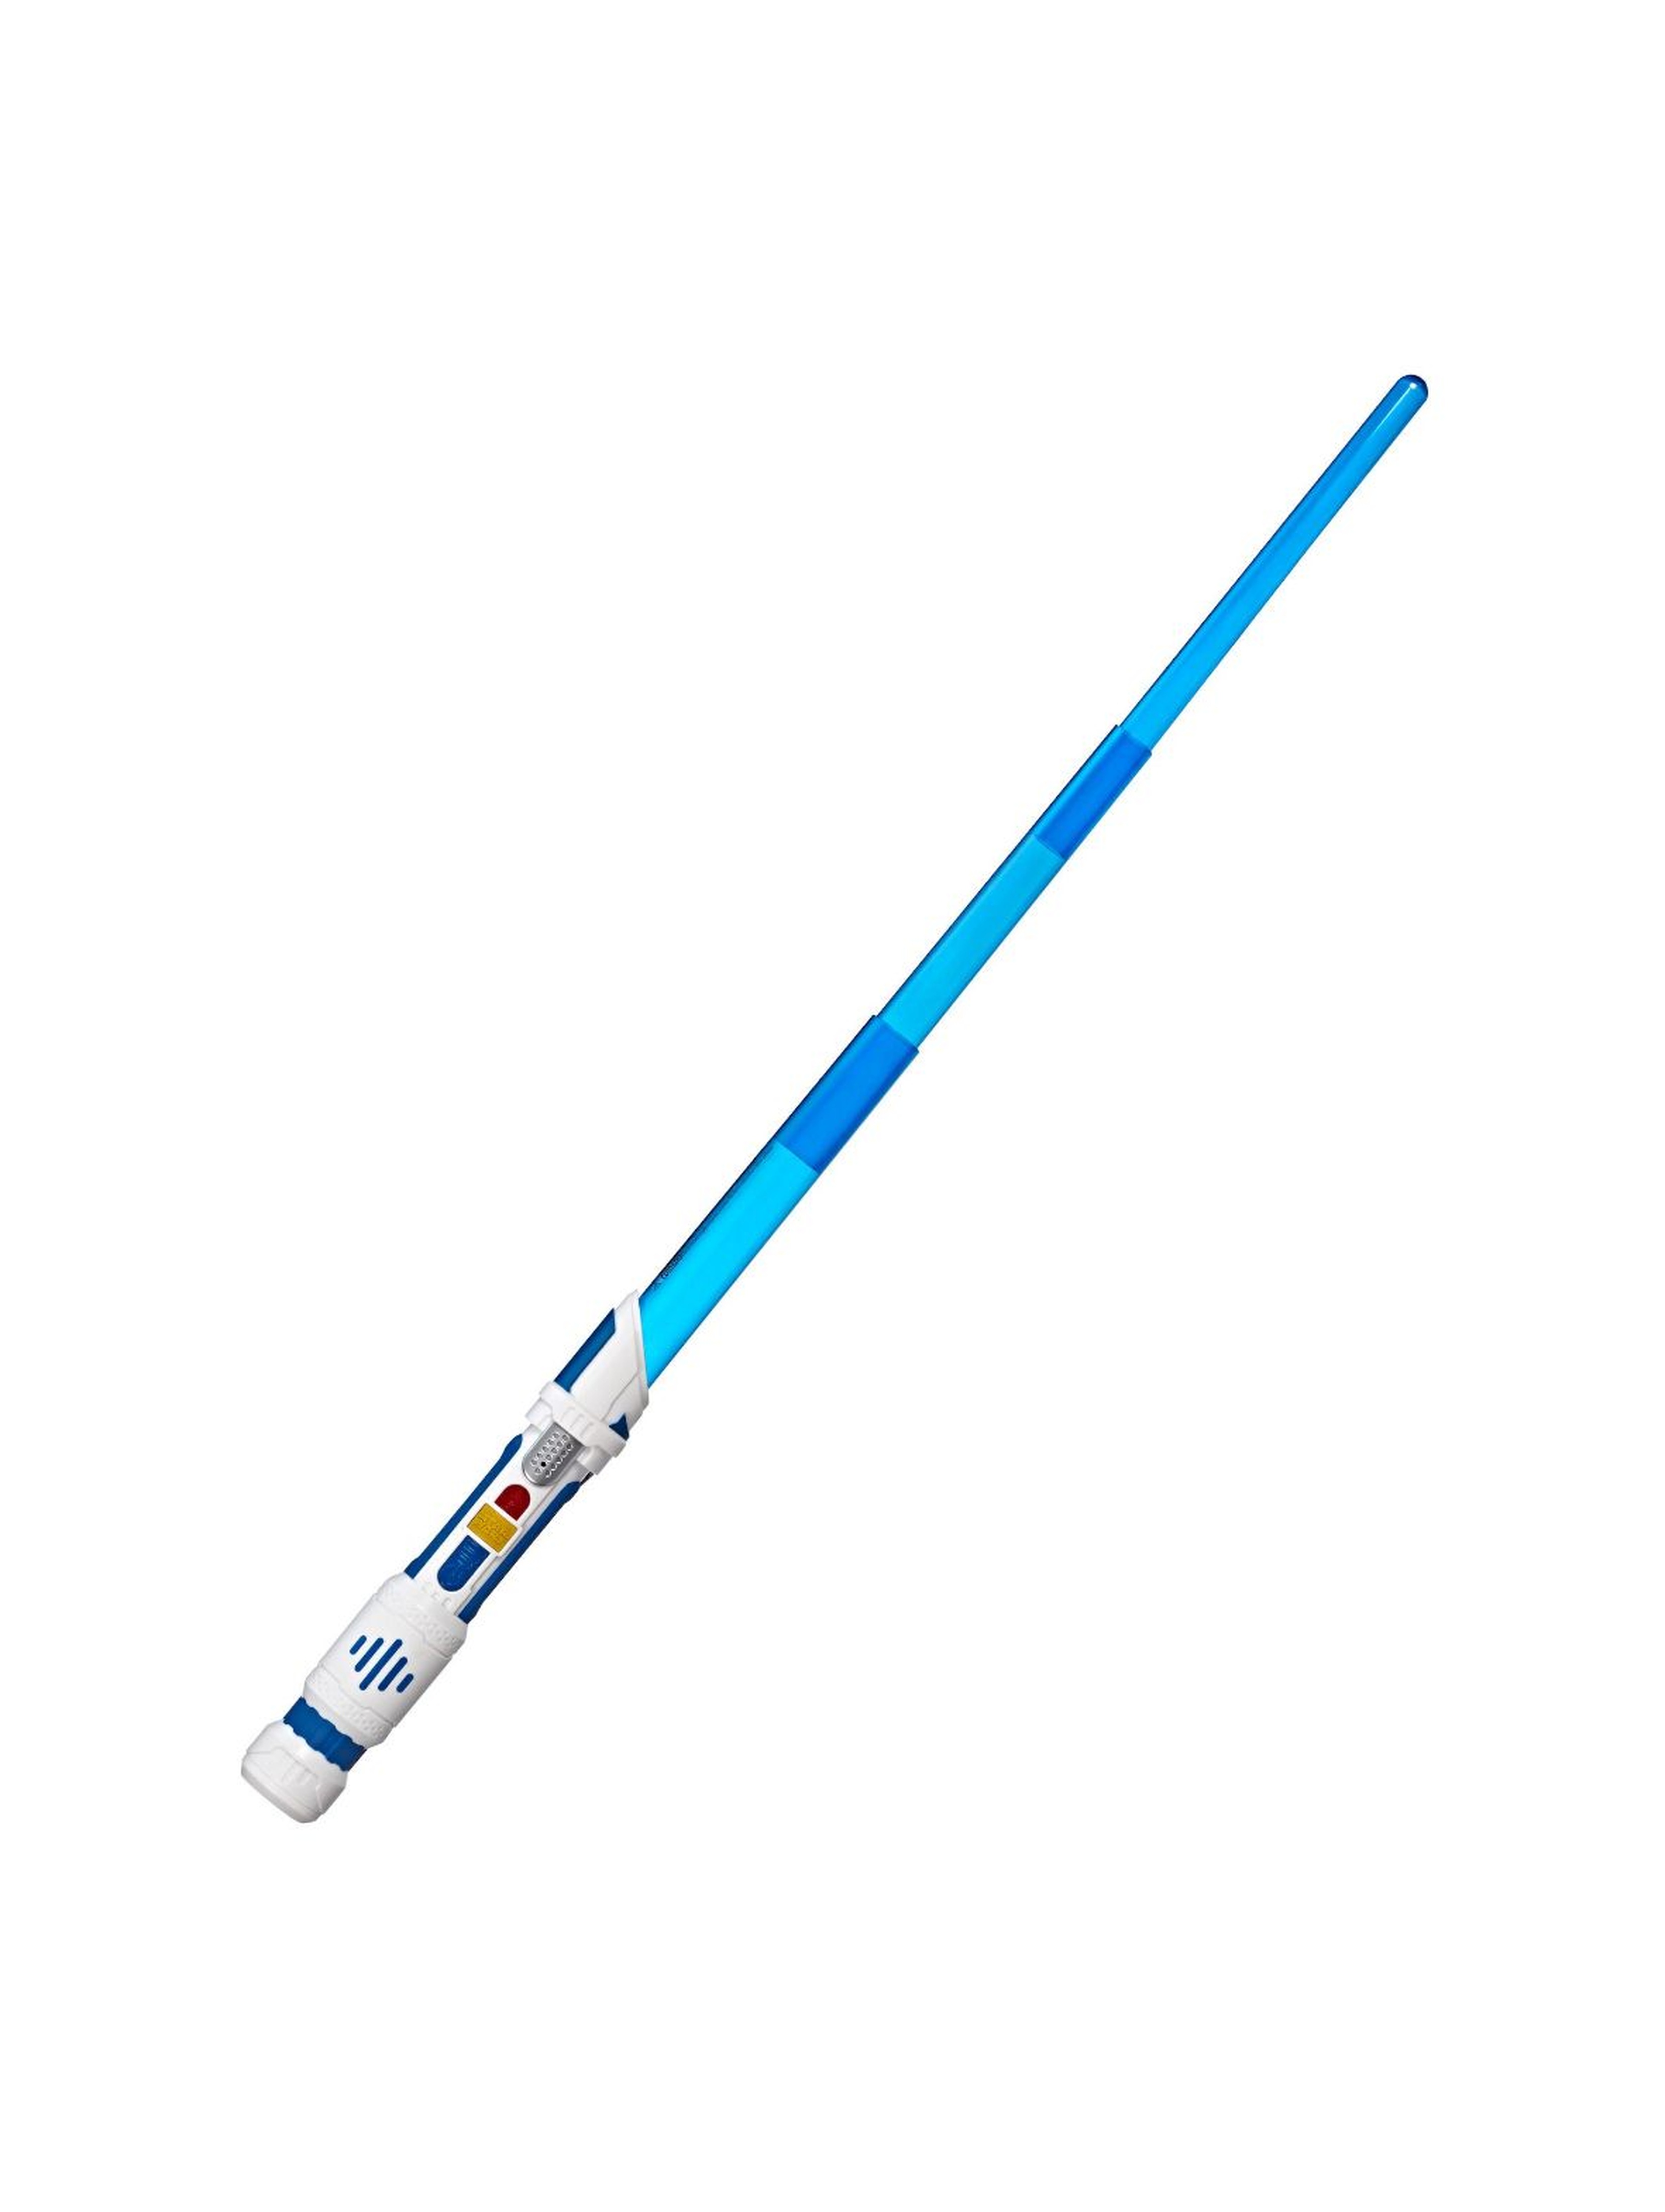 Star Wars miecz świetlny Scream saber 4+